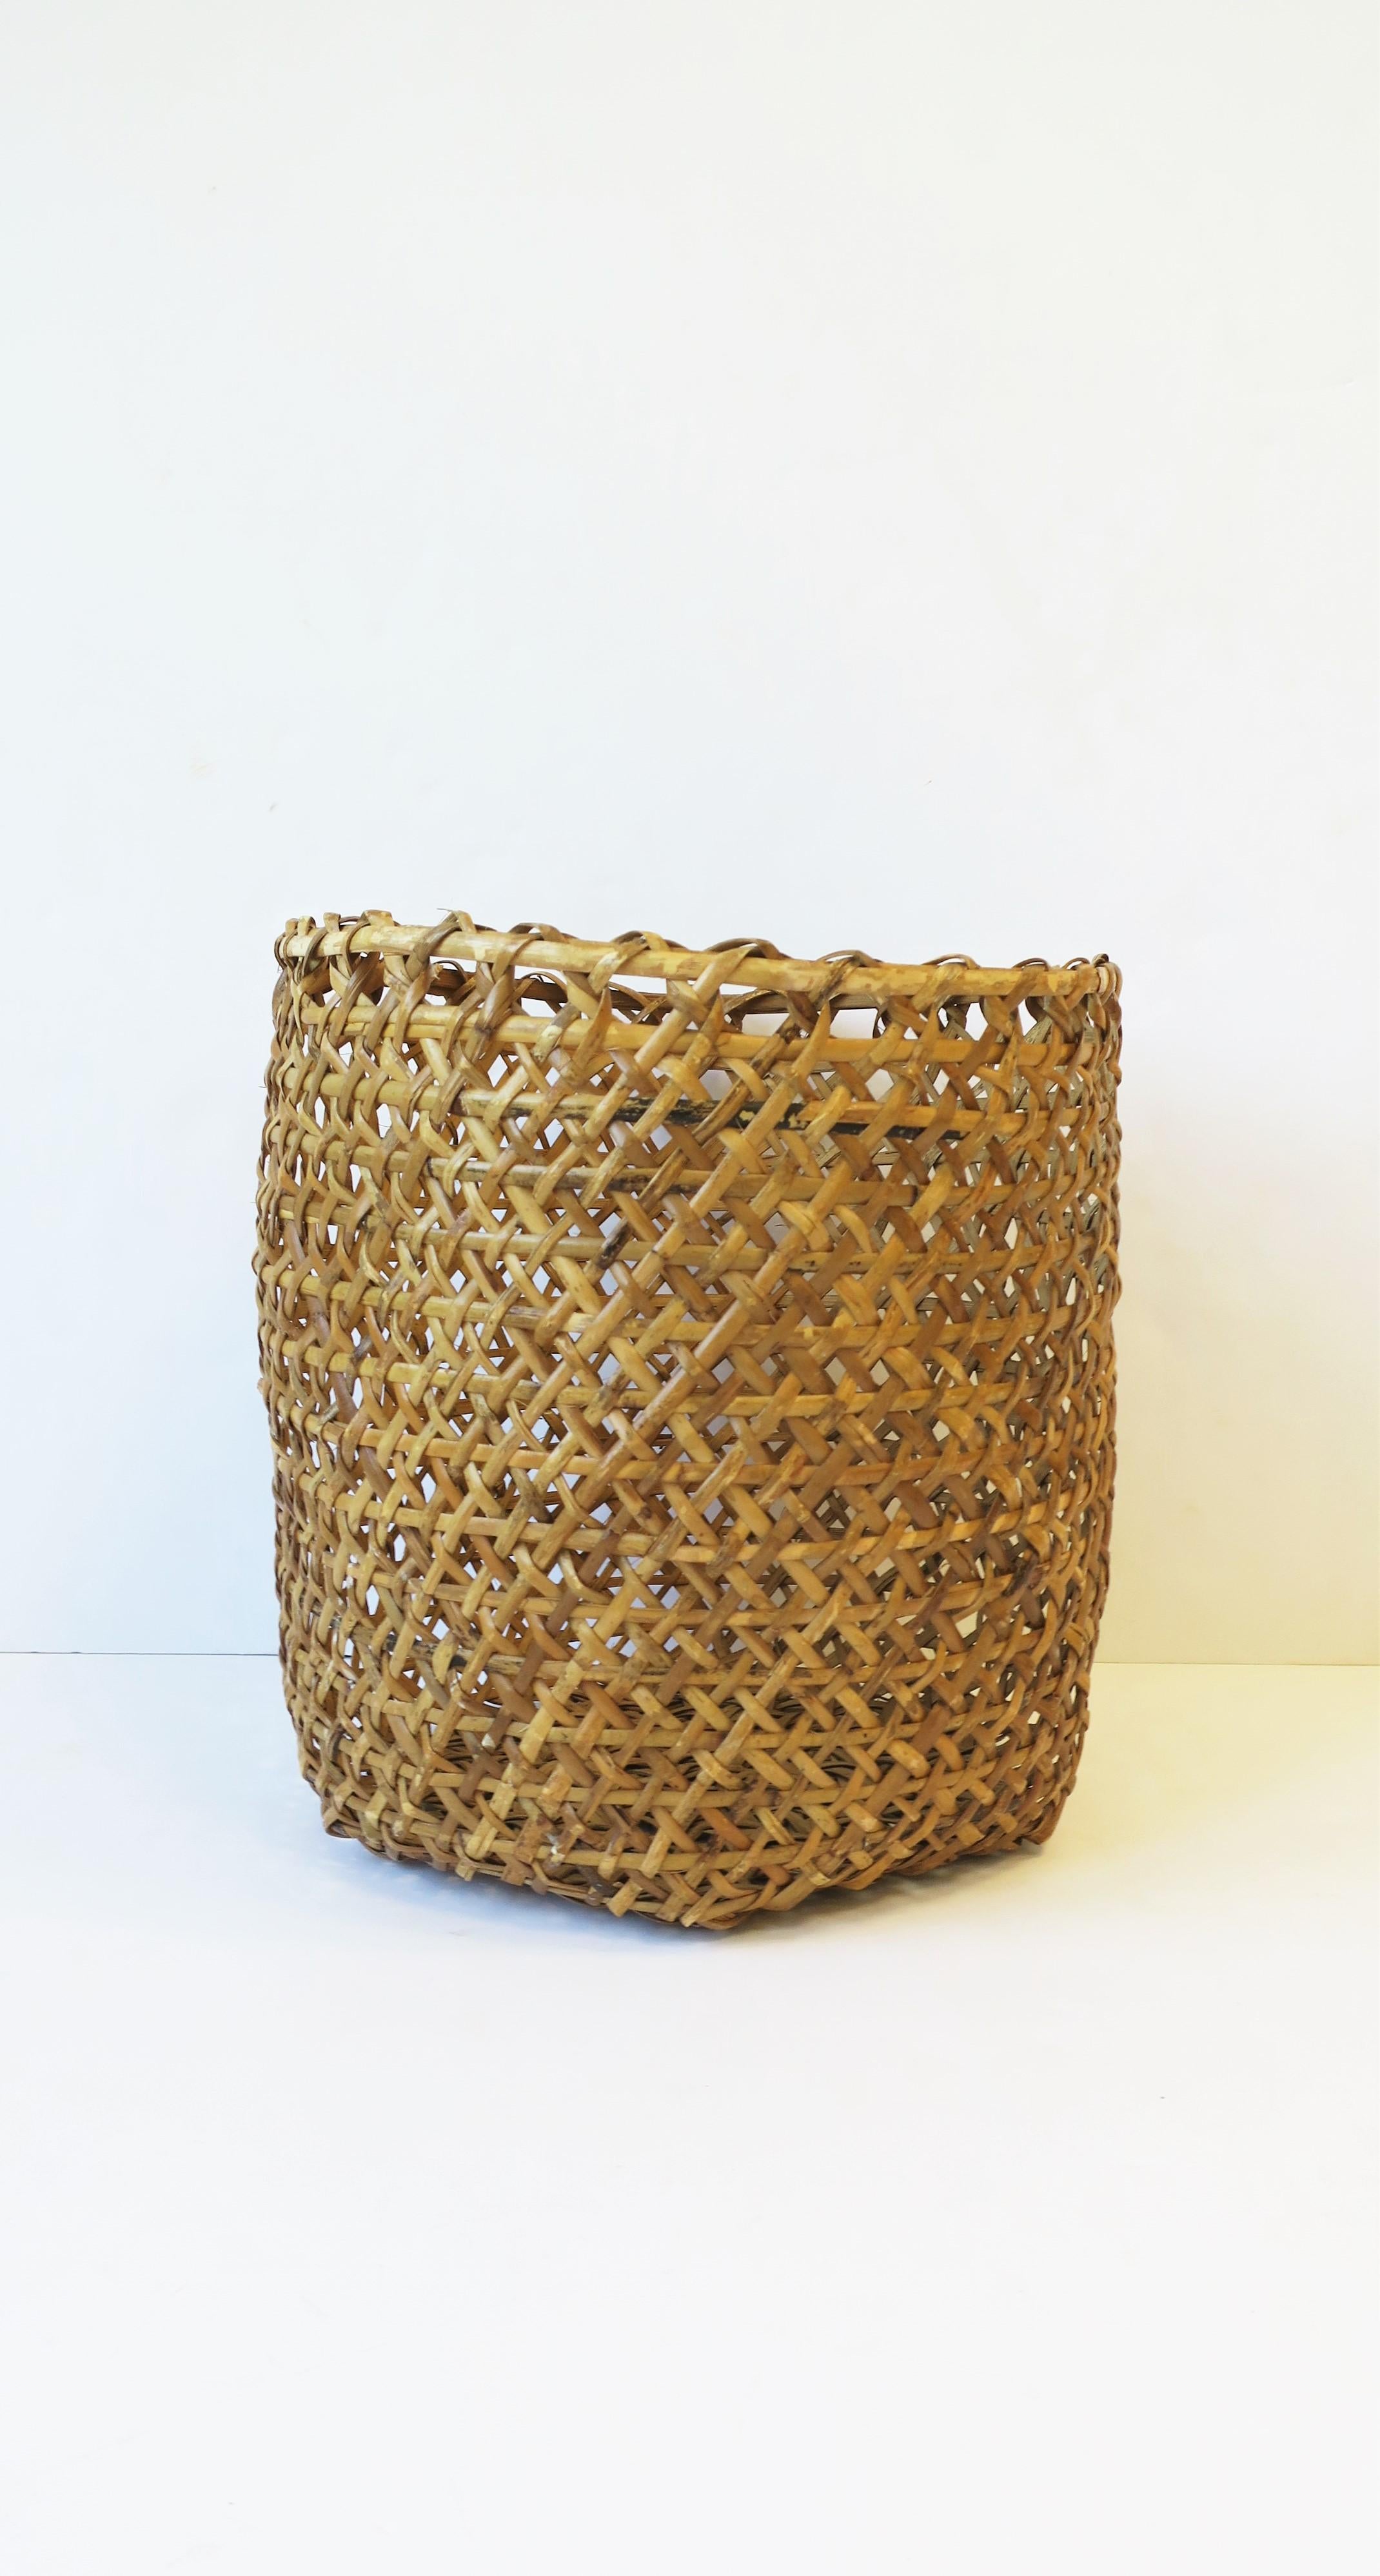 Vintage Wicker Basket Cachepot or Wastebasket Trash Can 1